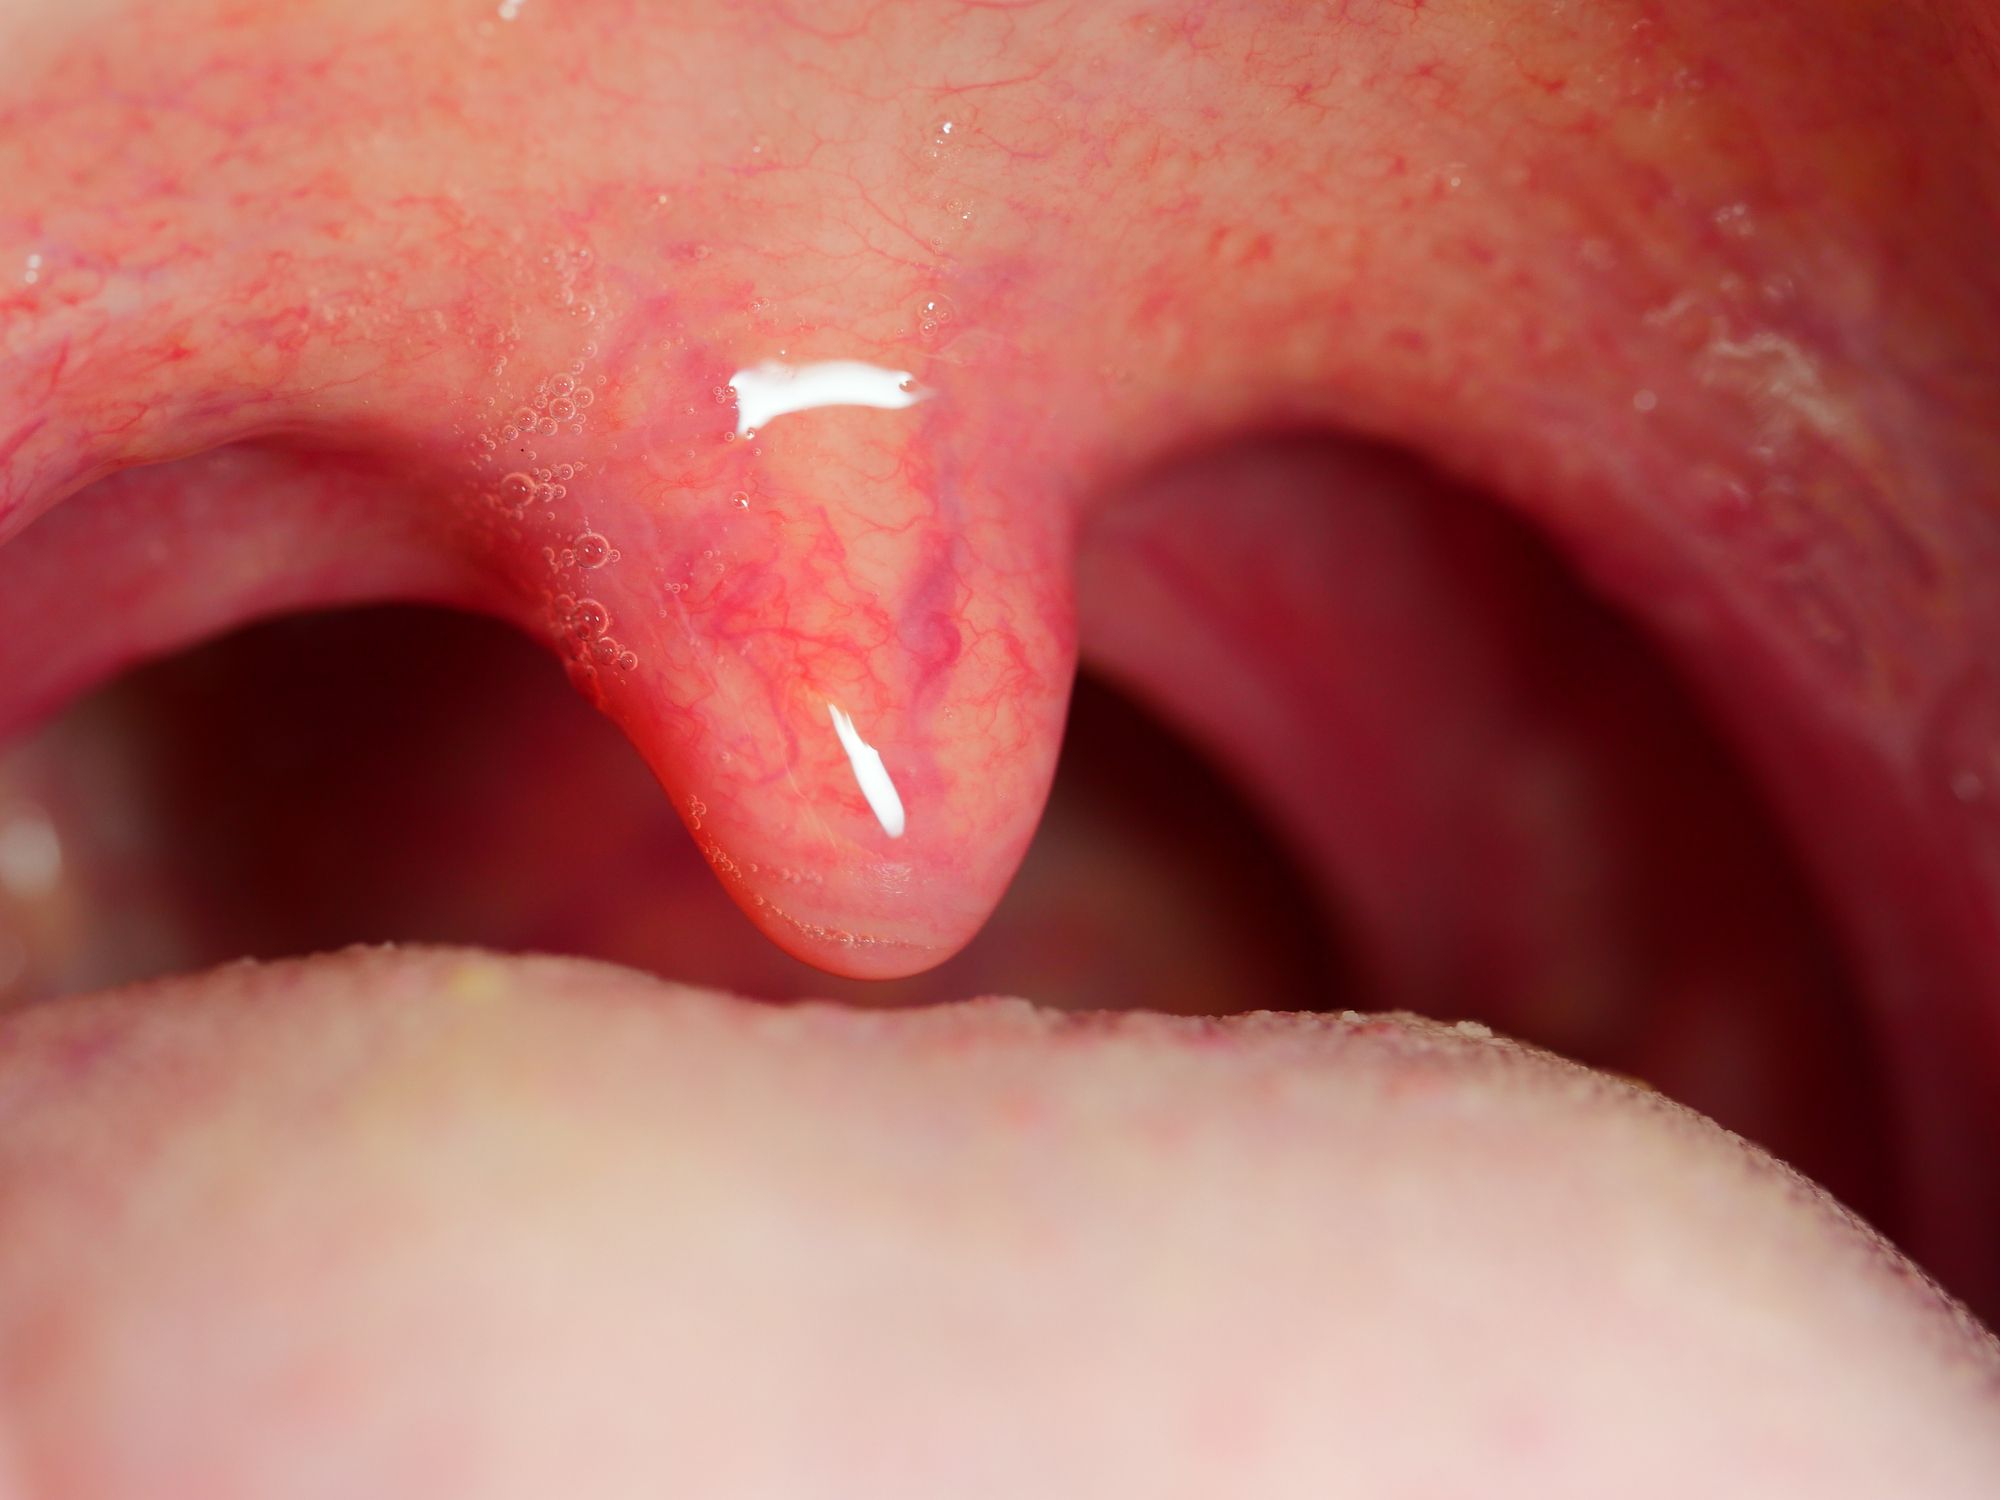 cause of papilloma on uvula)